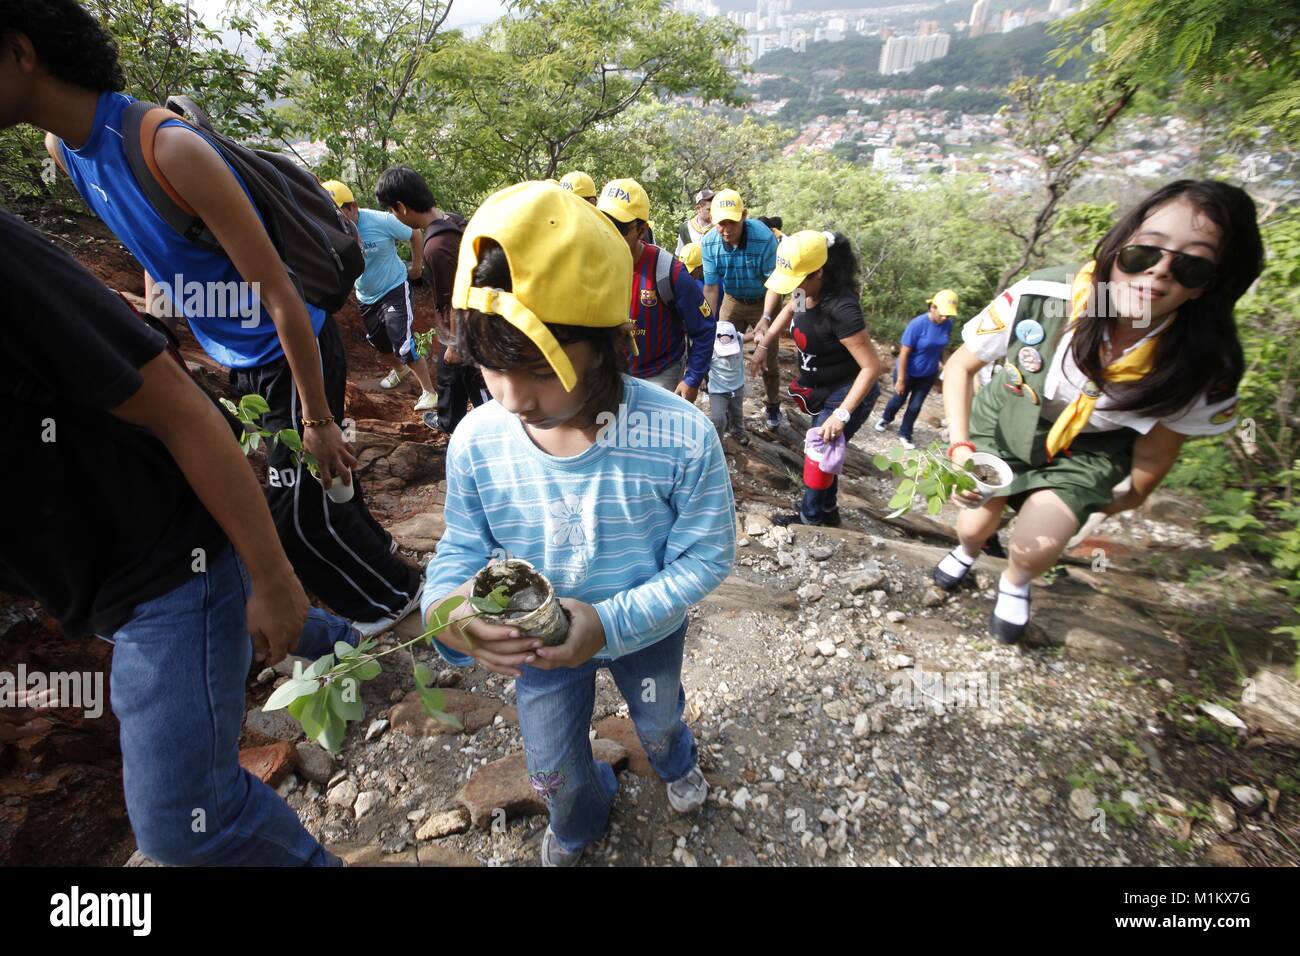 Mai 27, 2012 - Valencia, Carabobo, Venezuela - Juni 04., 2012. Ein Kind nimmt mit seiner Mutter in einer Baumpflanzaktion des Casupo Hügel mit Bäumen in der Baumschule gekeimt. Fernando Pe''""" alver Park, gegründet 1983, verfügt über 22 Hektar für die Erholung, die die Beziehung zwischen Mensch und Natur fördern, gekreuzt wird durch den Fluss Cabriales, es gibt vielfältige Ökosysteme, und es gibt eine große Vielfalt von Flora und Fauna. Der Park ist abhängig von der Regierung des Bundesstaates Carabobo, die Wartungskosten durch eine Baumschule minimiert, wie eine nachhaltige Entwicklung Projekt in Harmonie Stockfoto